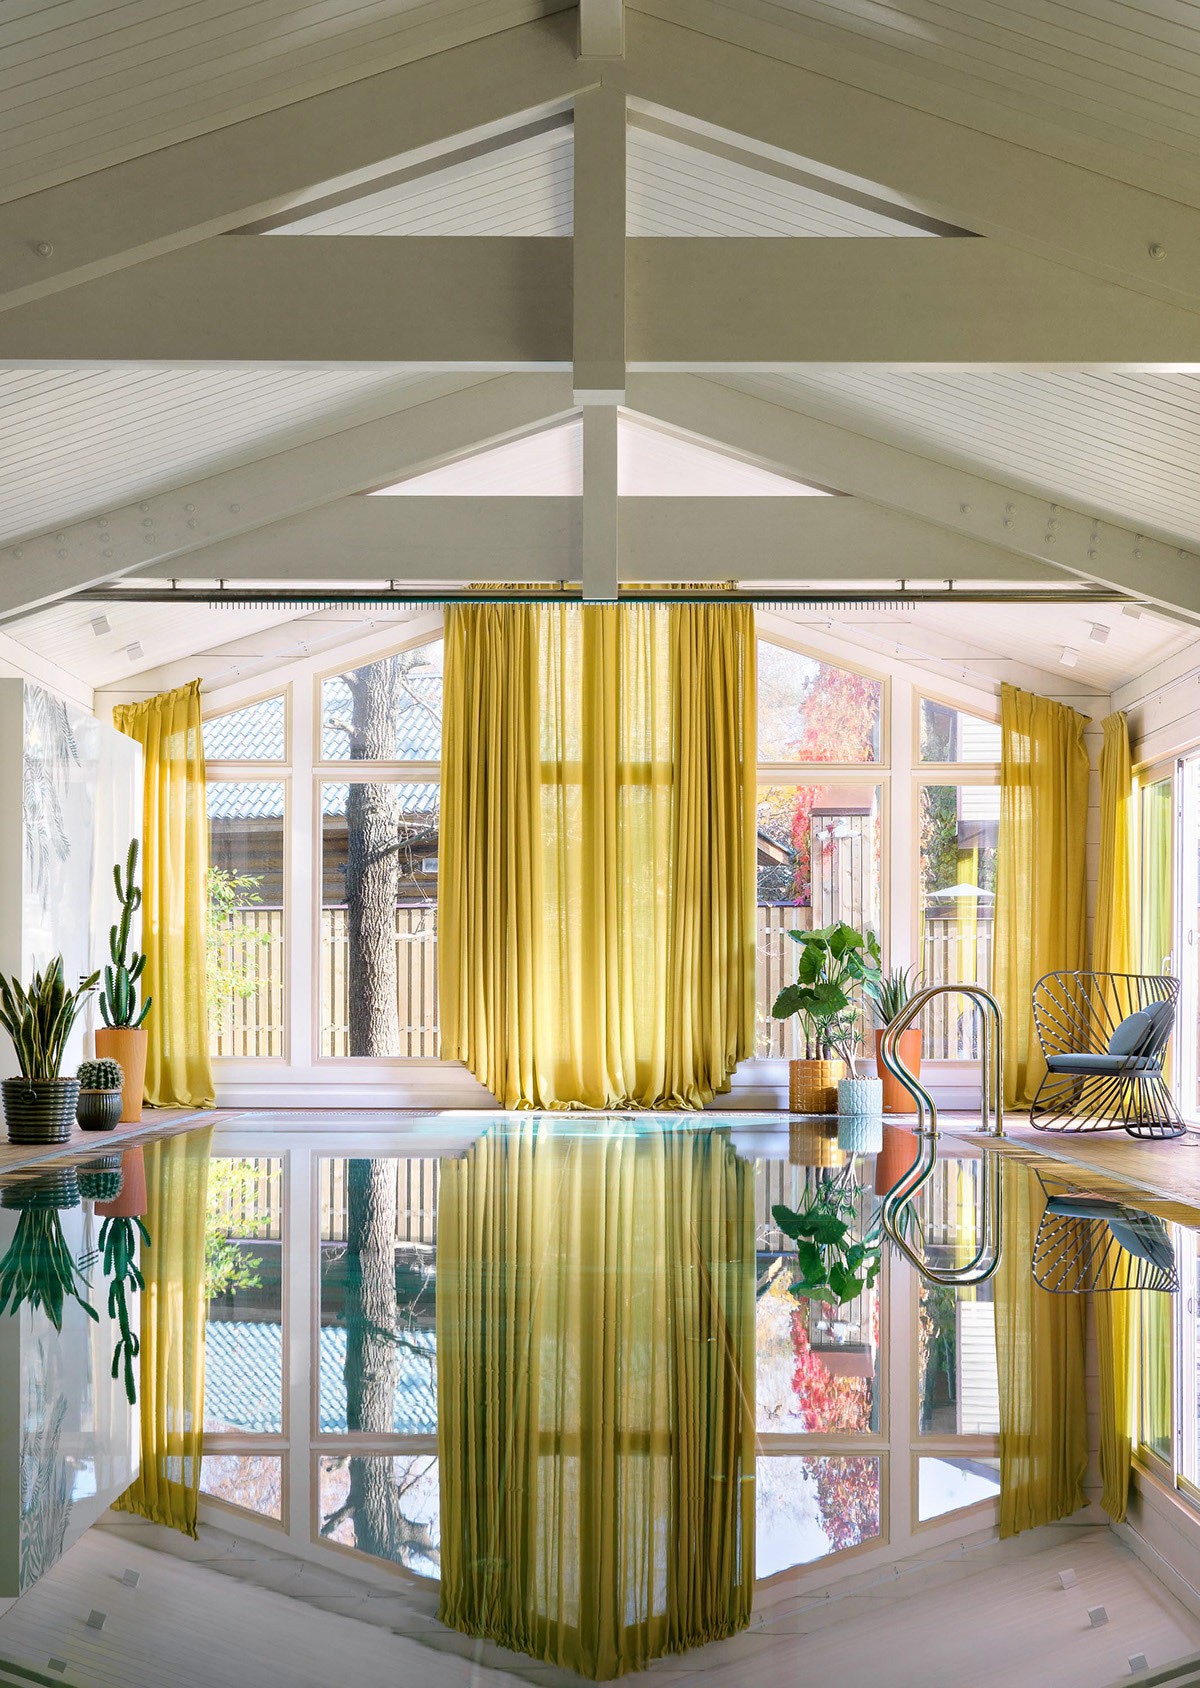 Hình ảnh hồ bơi bên trong ngôi nhà rực rỡ sắc màu, phản chiếu rèm cửa màu vàng chanh